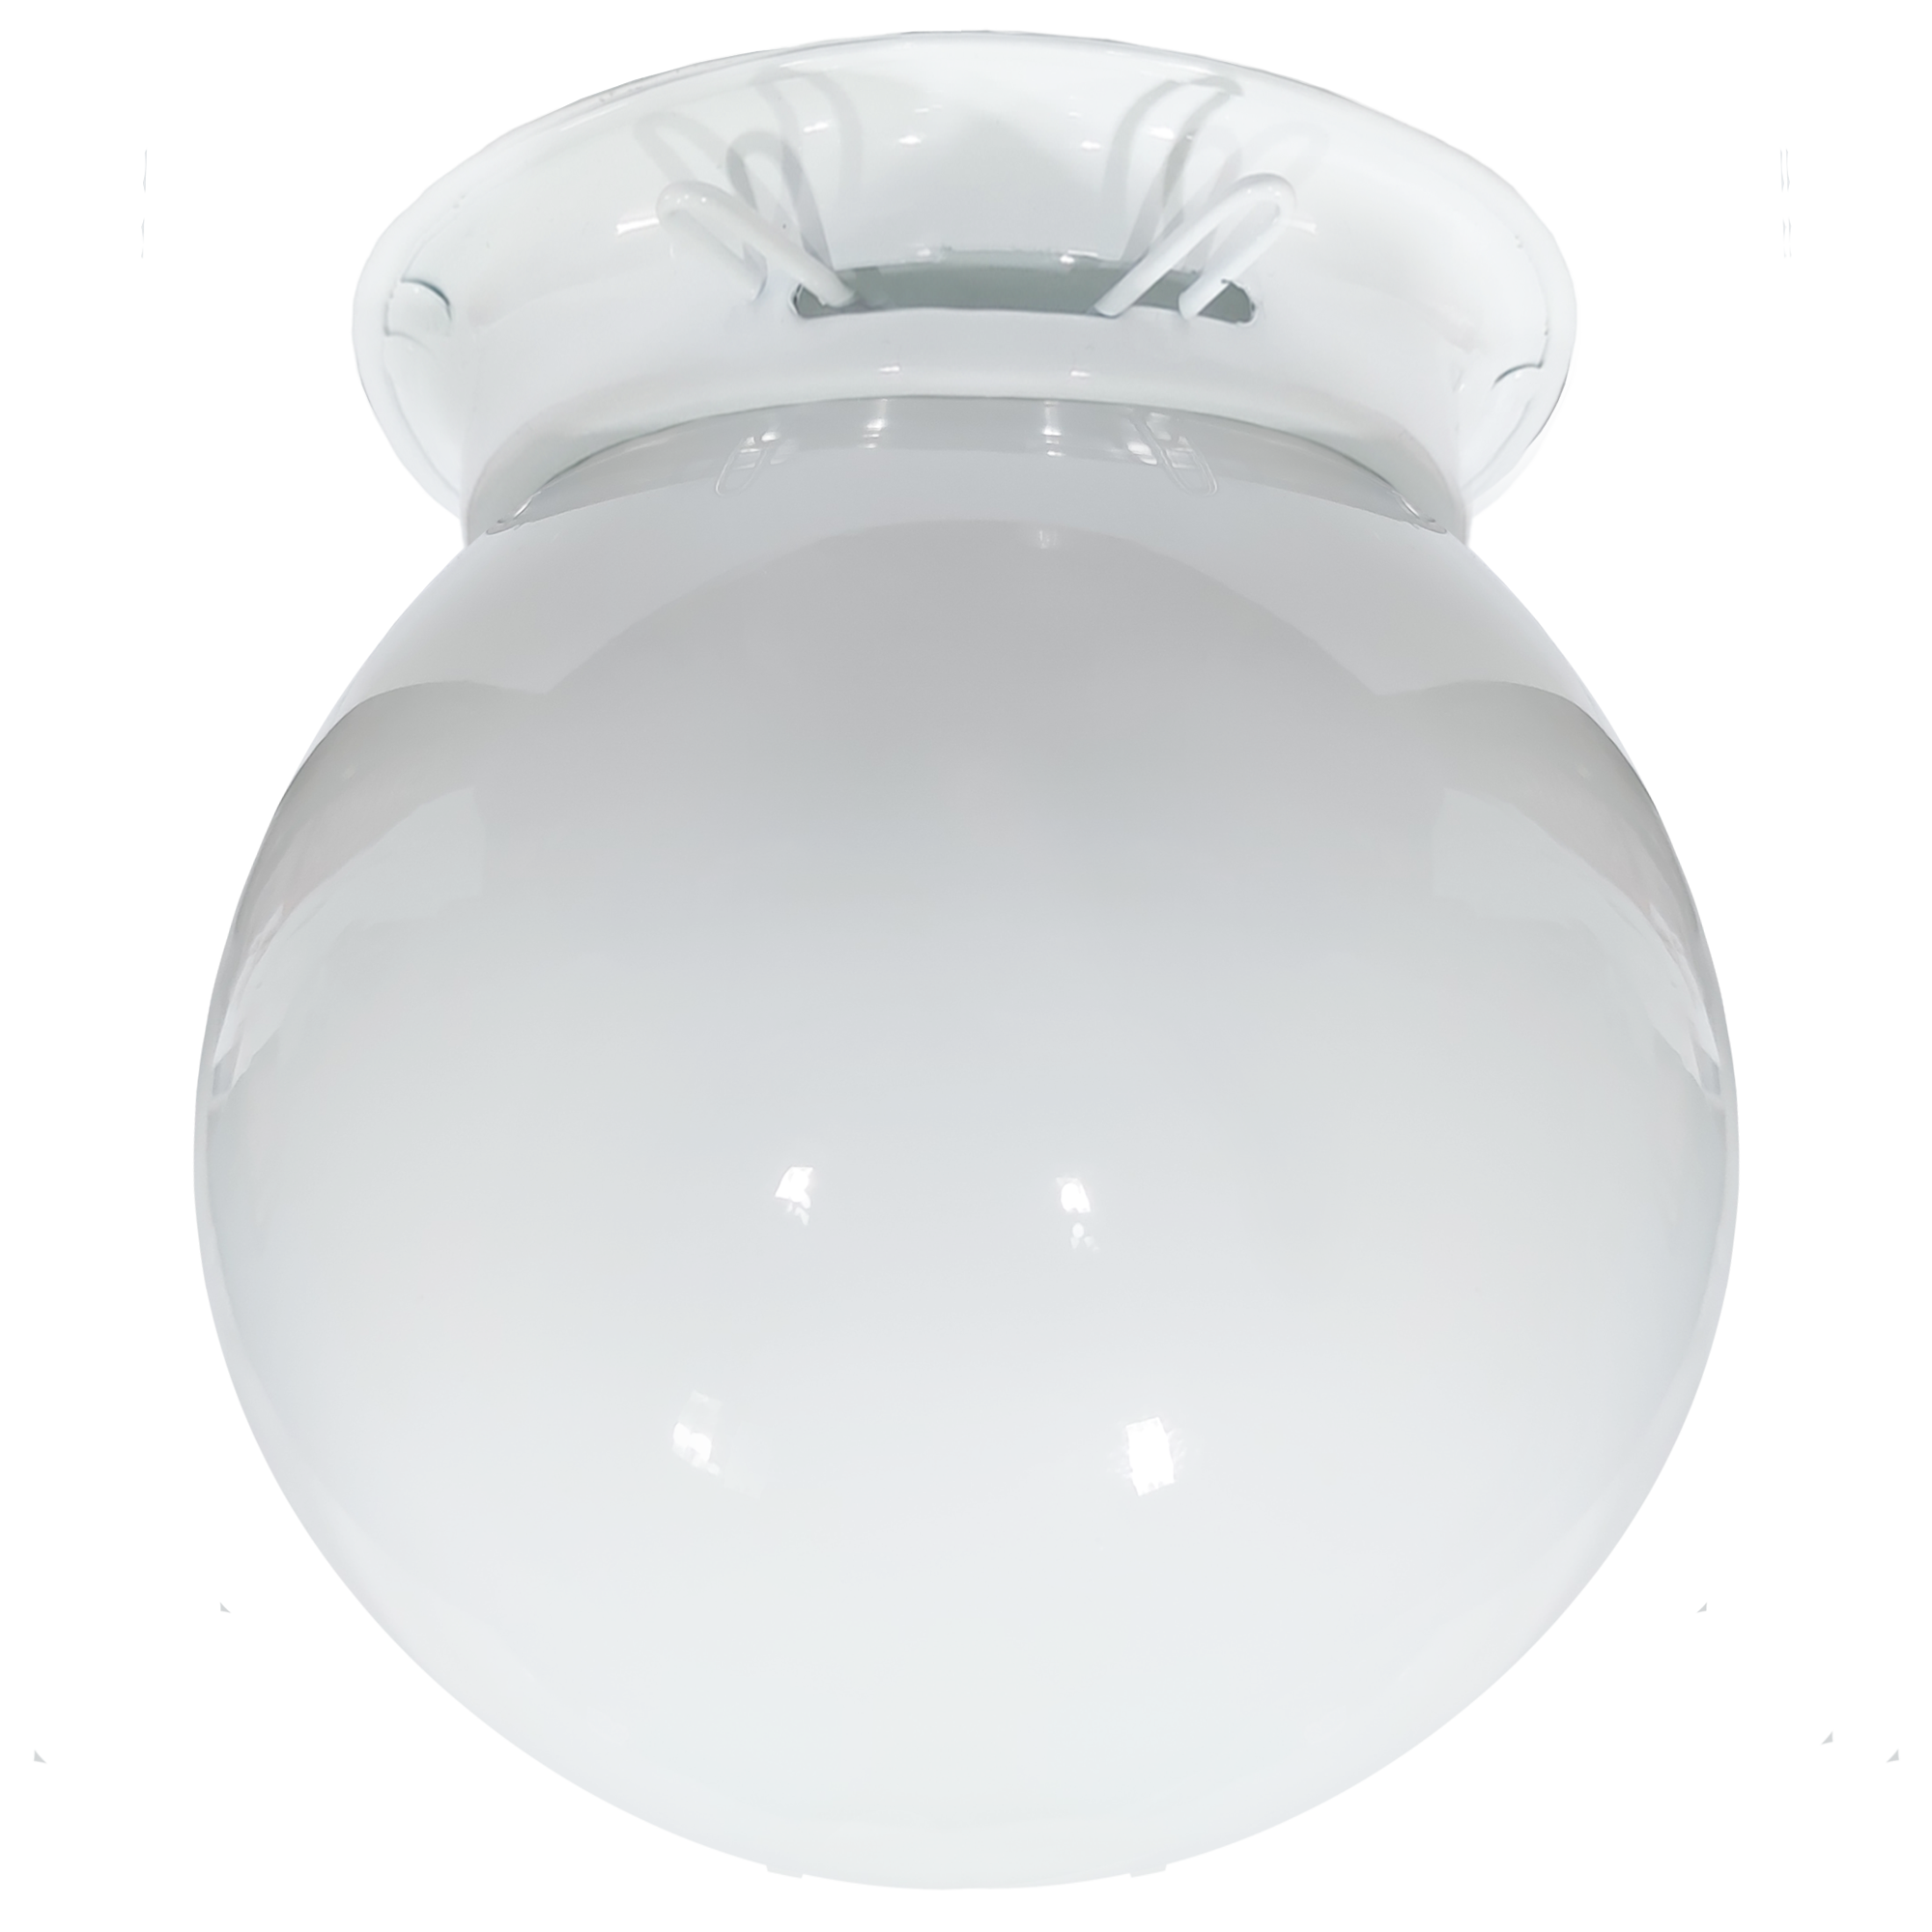 Plafon Chapa Branco Com Esfera 10 X 20 Leitosa                                                      